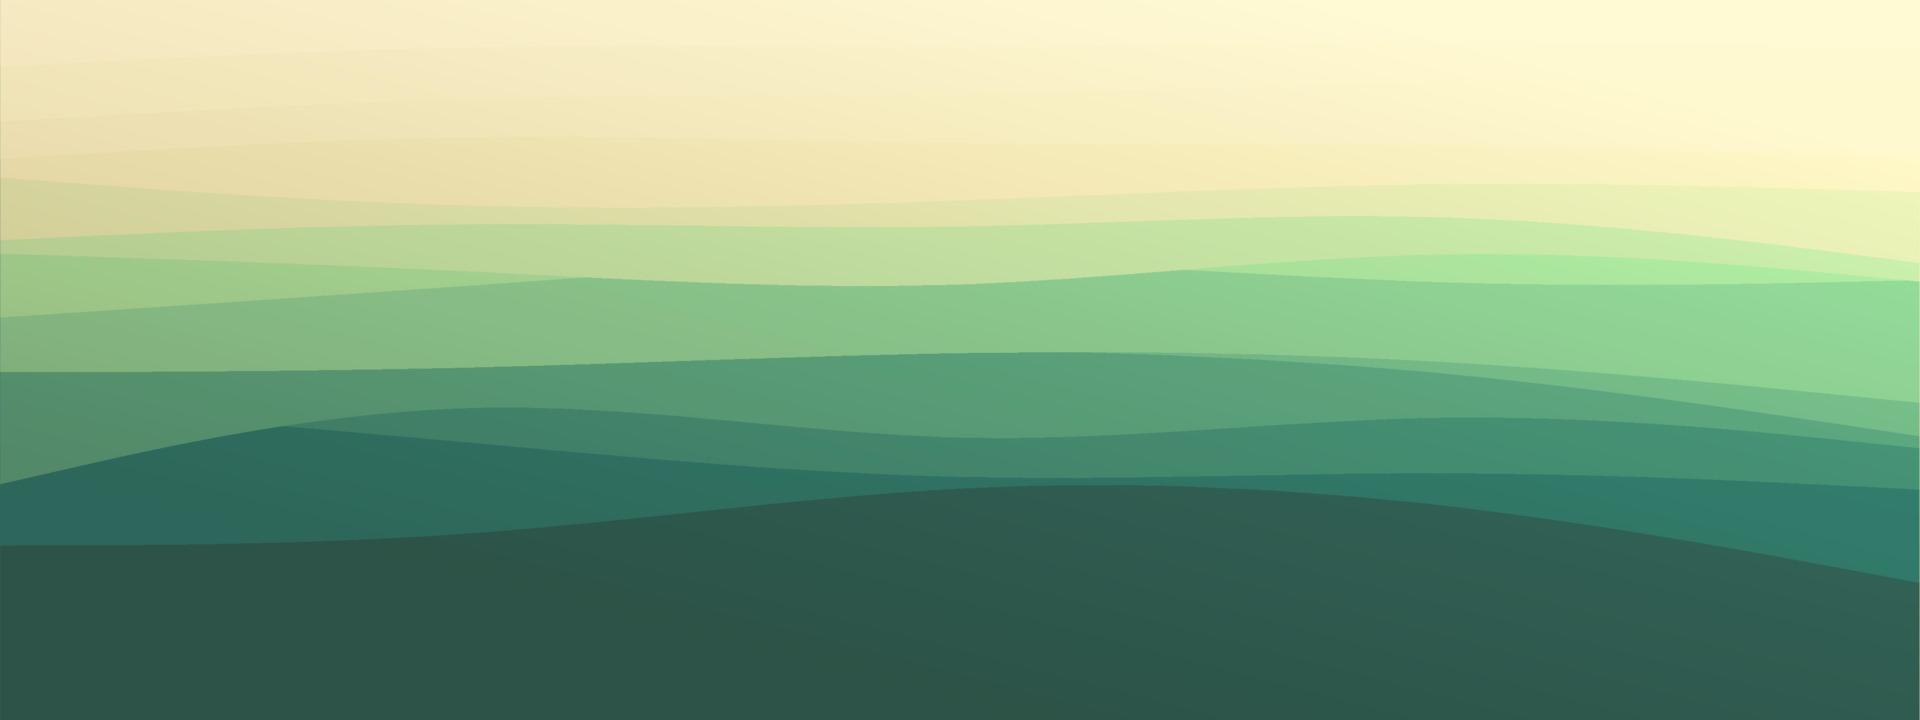 líneas onduladas abstractas geométricas de moda fondo degradado color combinado verde oscuro natural. plantilla moderna para el sitio web de la página de destino de la tarjeta de presentación del cartel. ilustración vectorial eps 10 vector